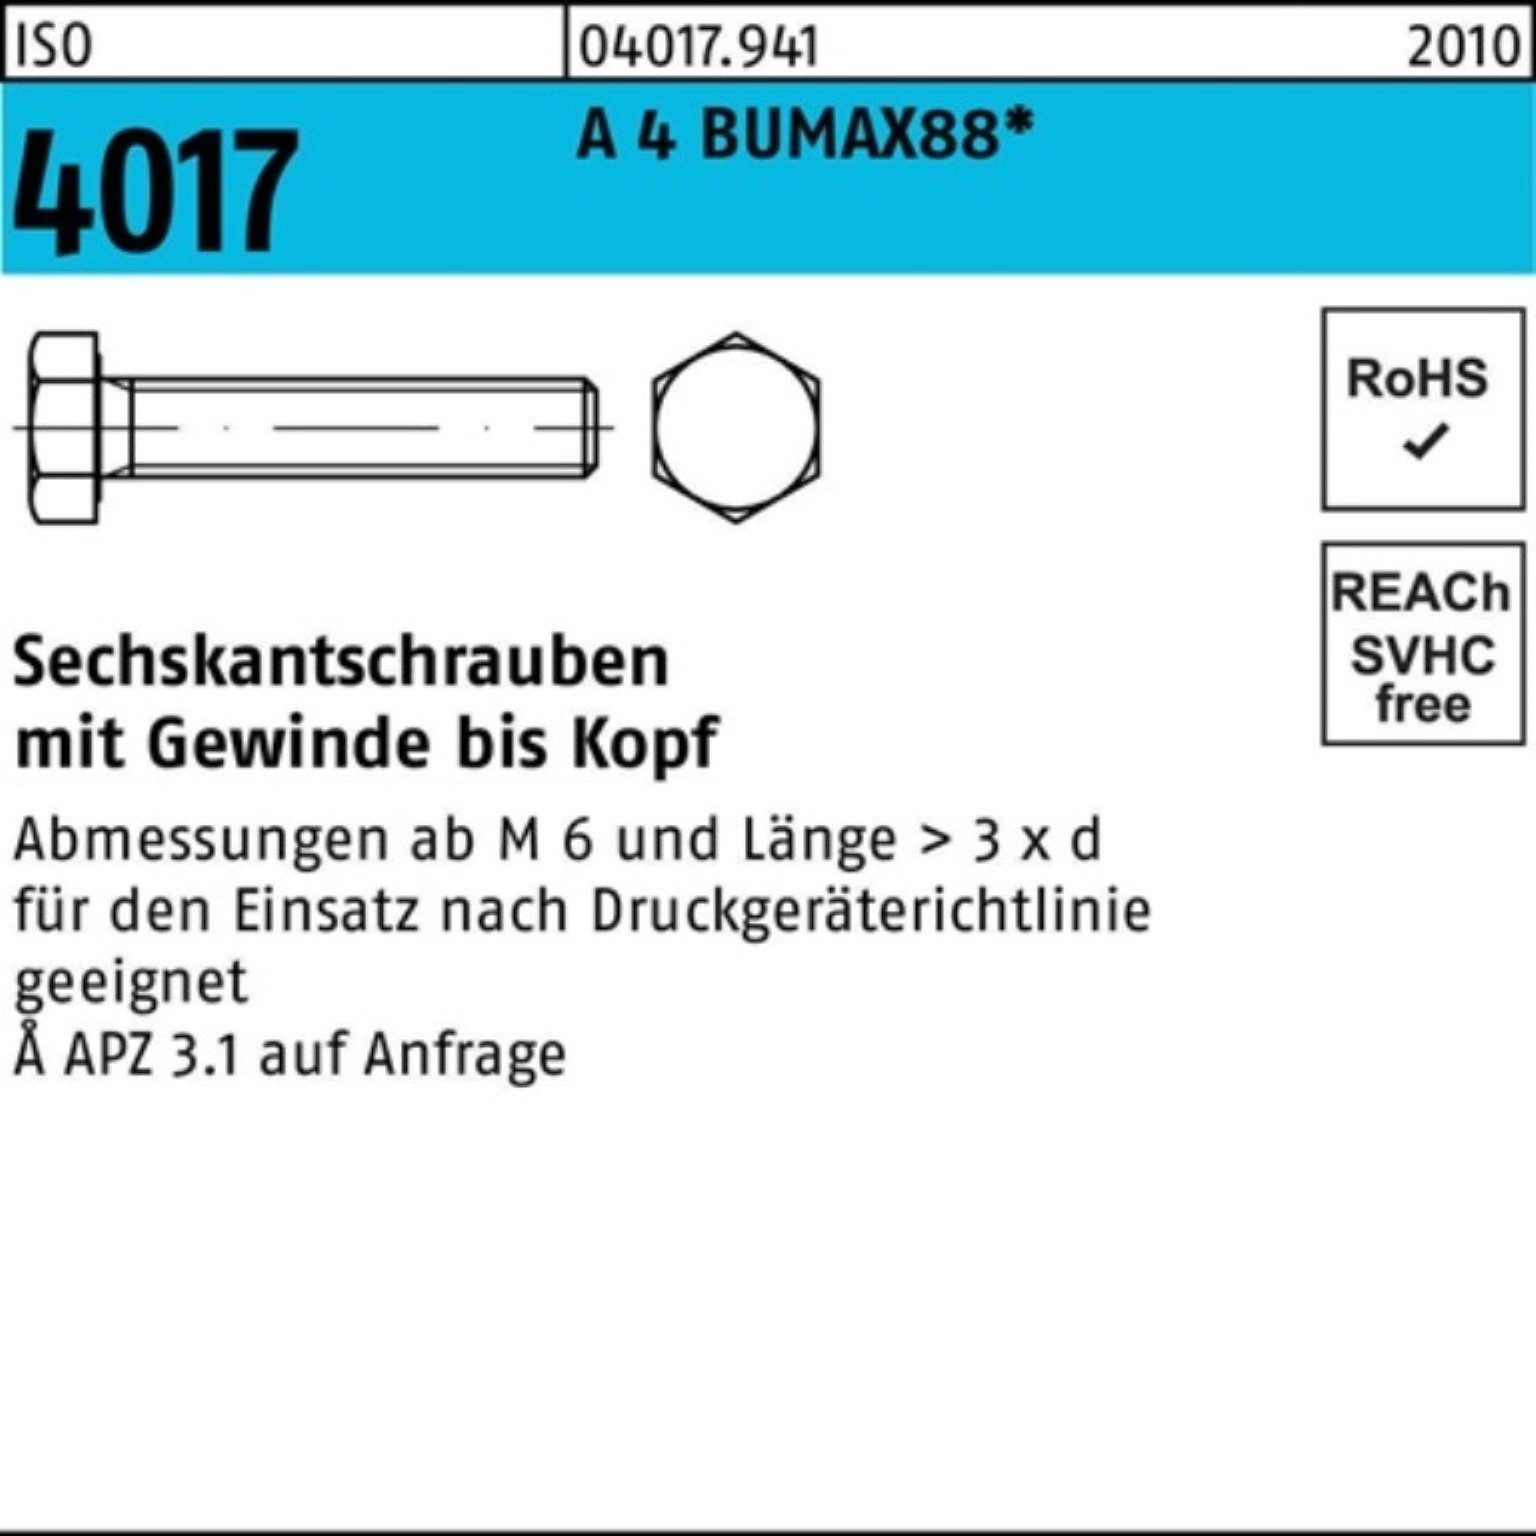 Bufab Sechskantschraube BUMAX88 4017 25 50 Stück A 4 VG Pack ISO 100er Sechskantschraube M12x